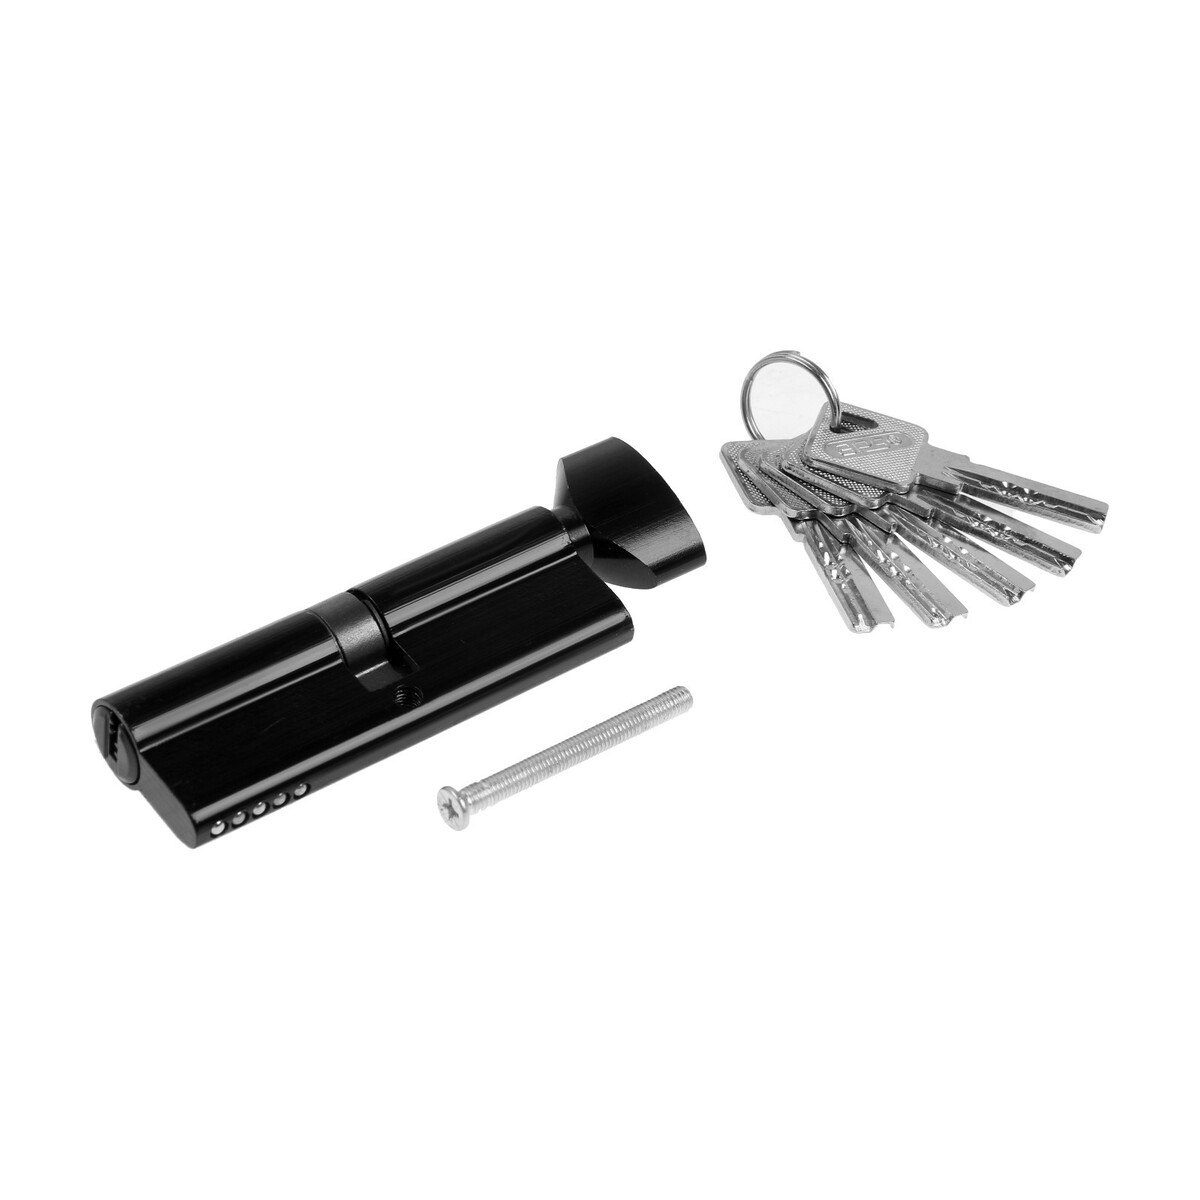 Цилиндровый механизм, 90 мм, с вертушкой, перфорированный ключ, 5 ключей, цвет черный замок навесной аллюр вс1ч 374пд блистер цилиндровый 6 ключей